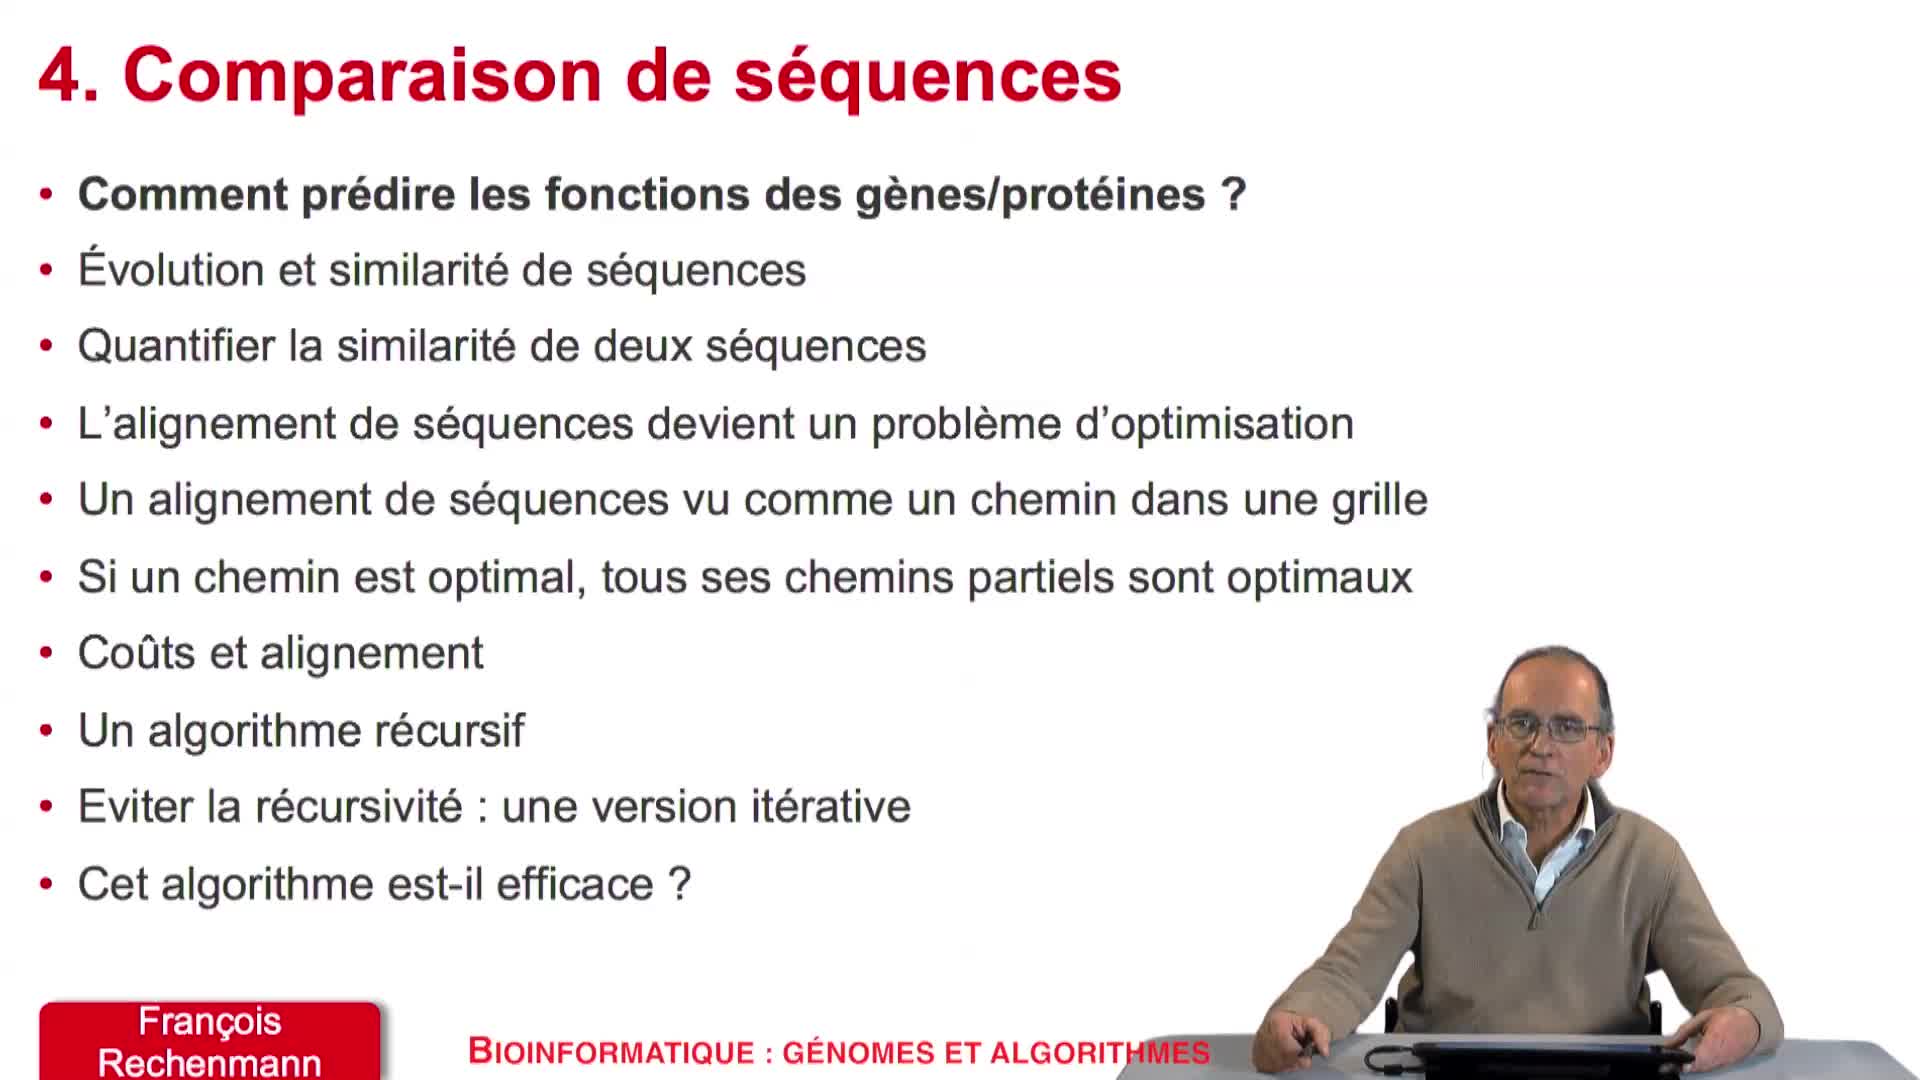 4.1. Comment prédire les fonctions des gènes/protéines ?